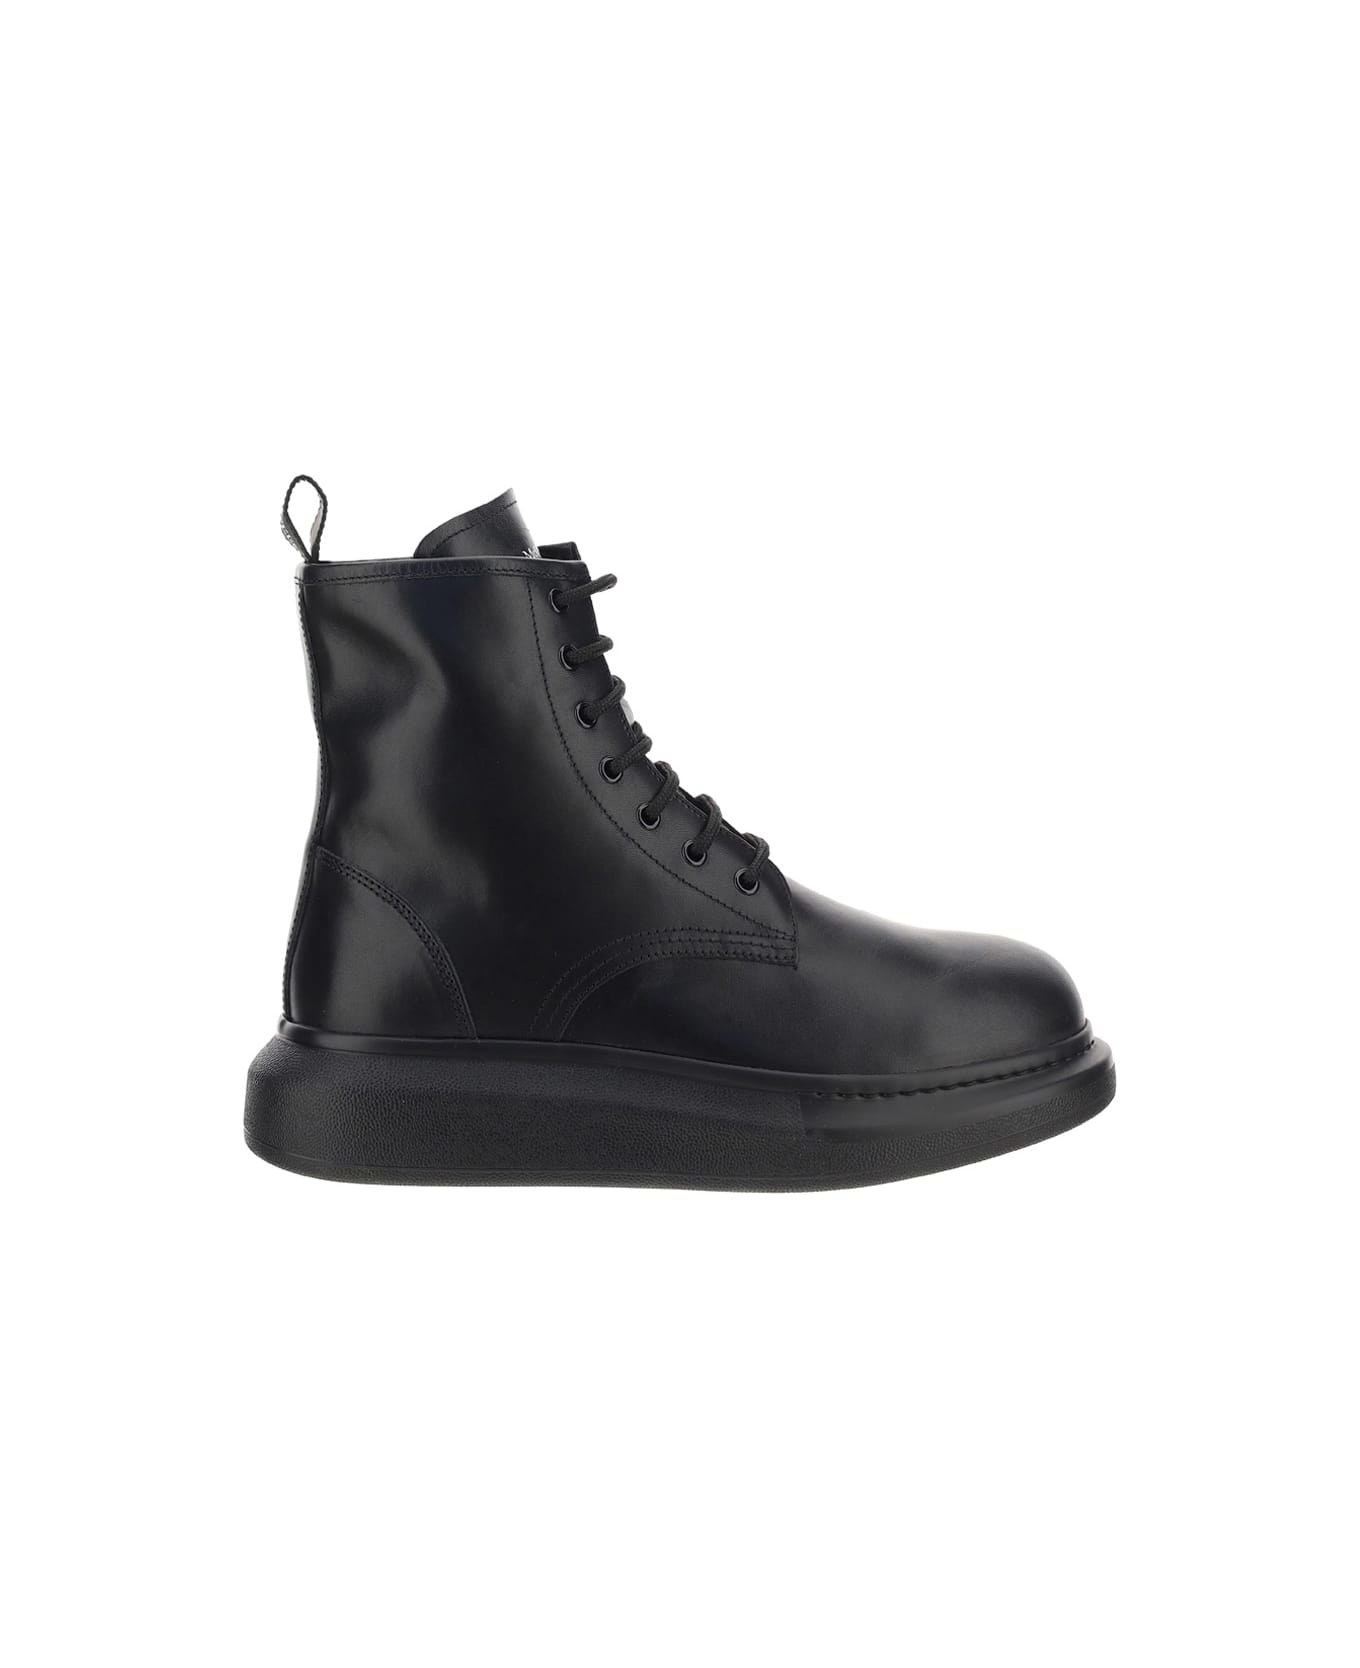 Alexander McQueen Alexander Mc Queen Sneakers - Black/black